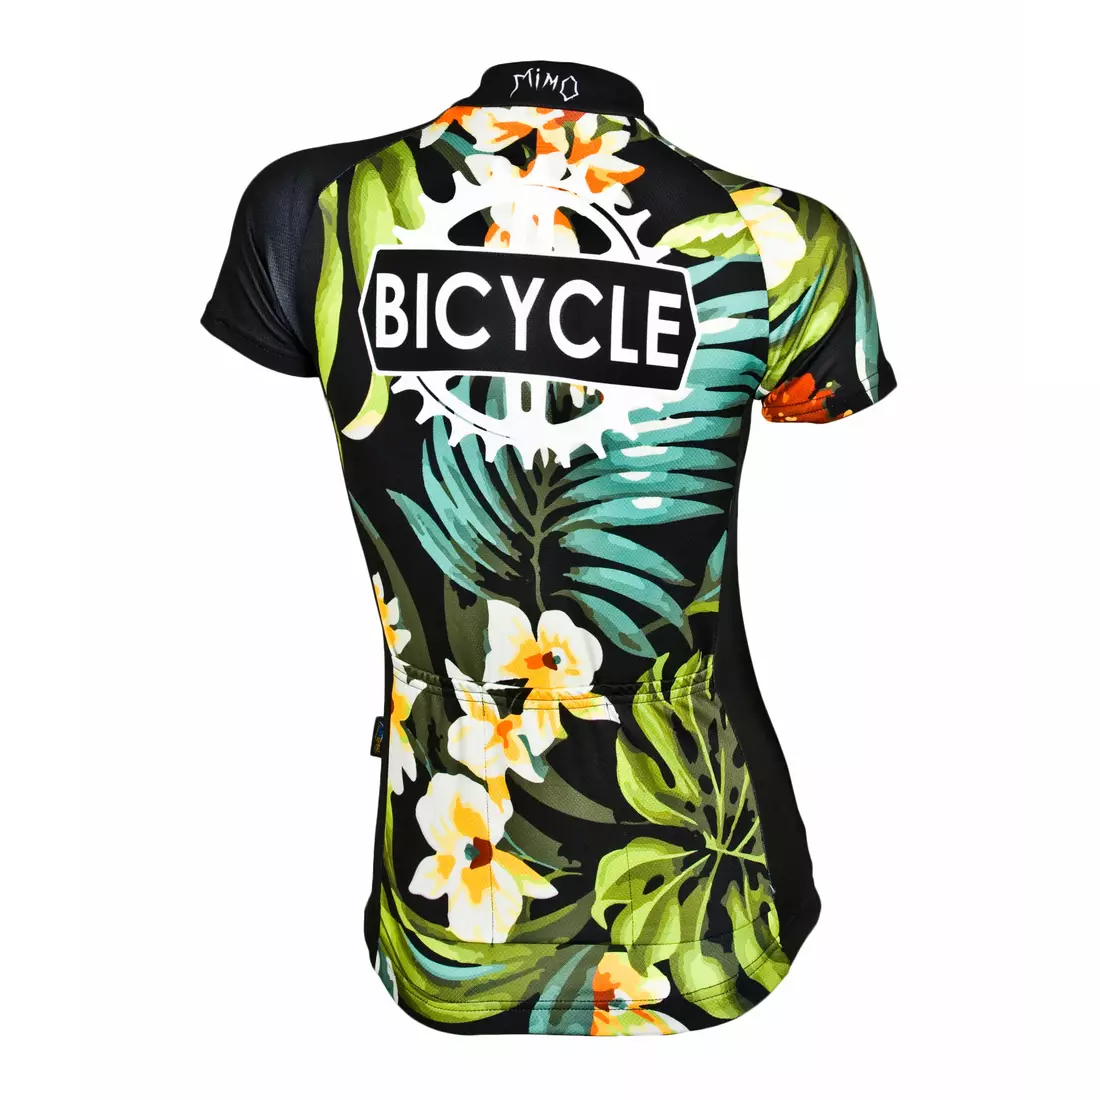 MikeSPORT DESIGN FLOWER BIKE women's cycling jersey